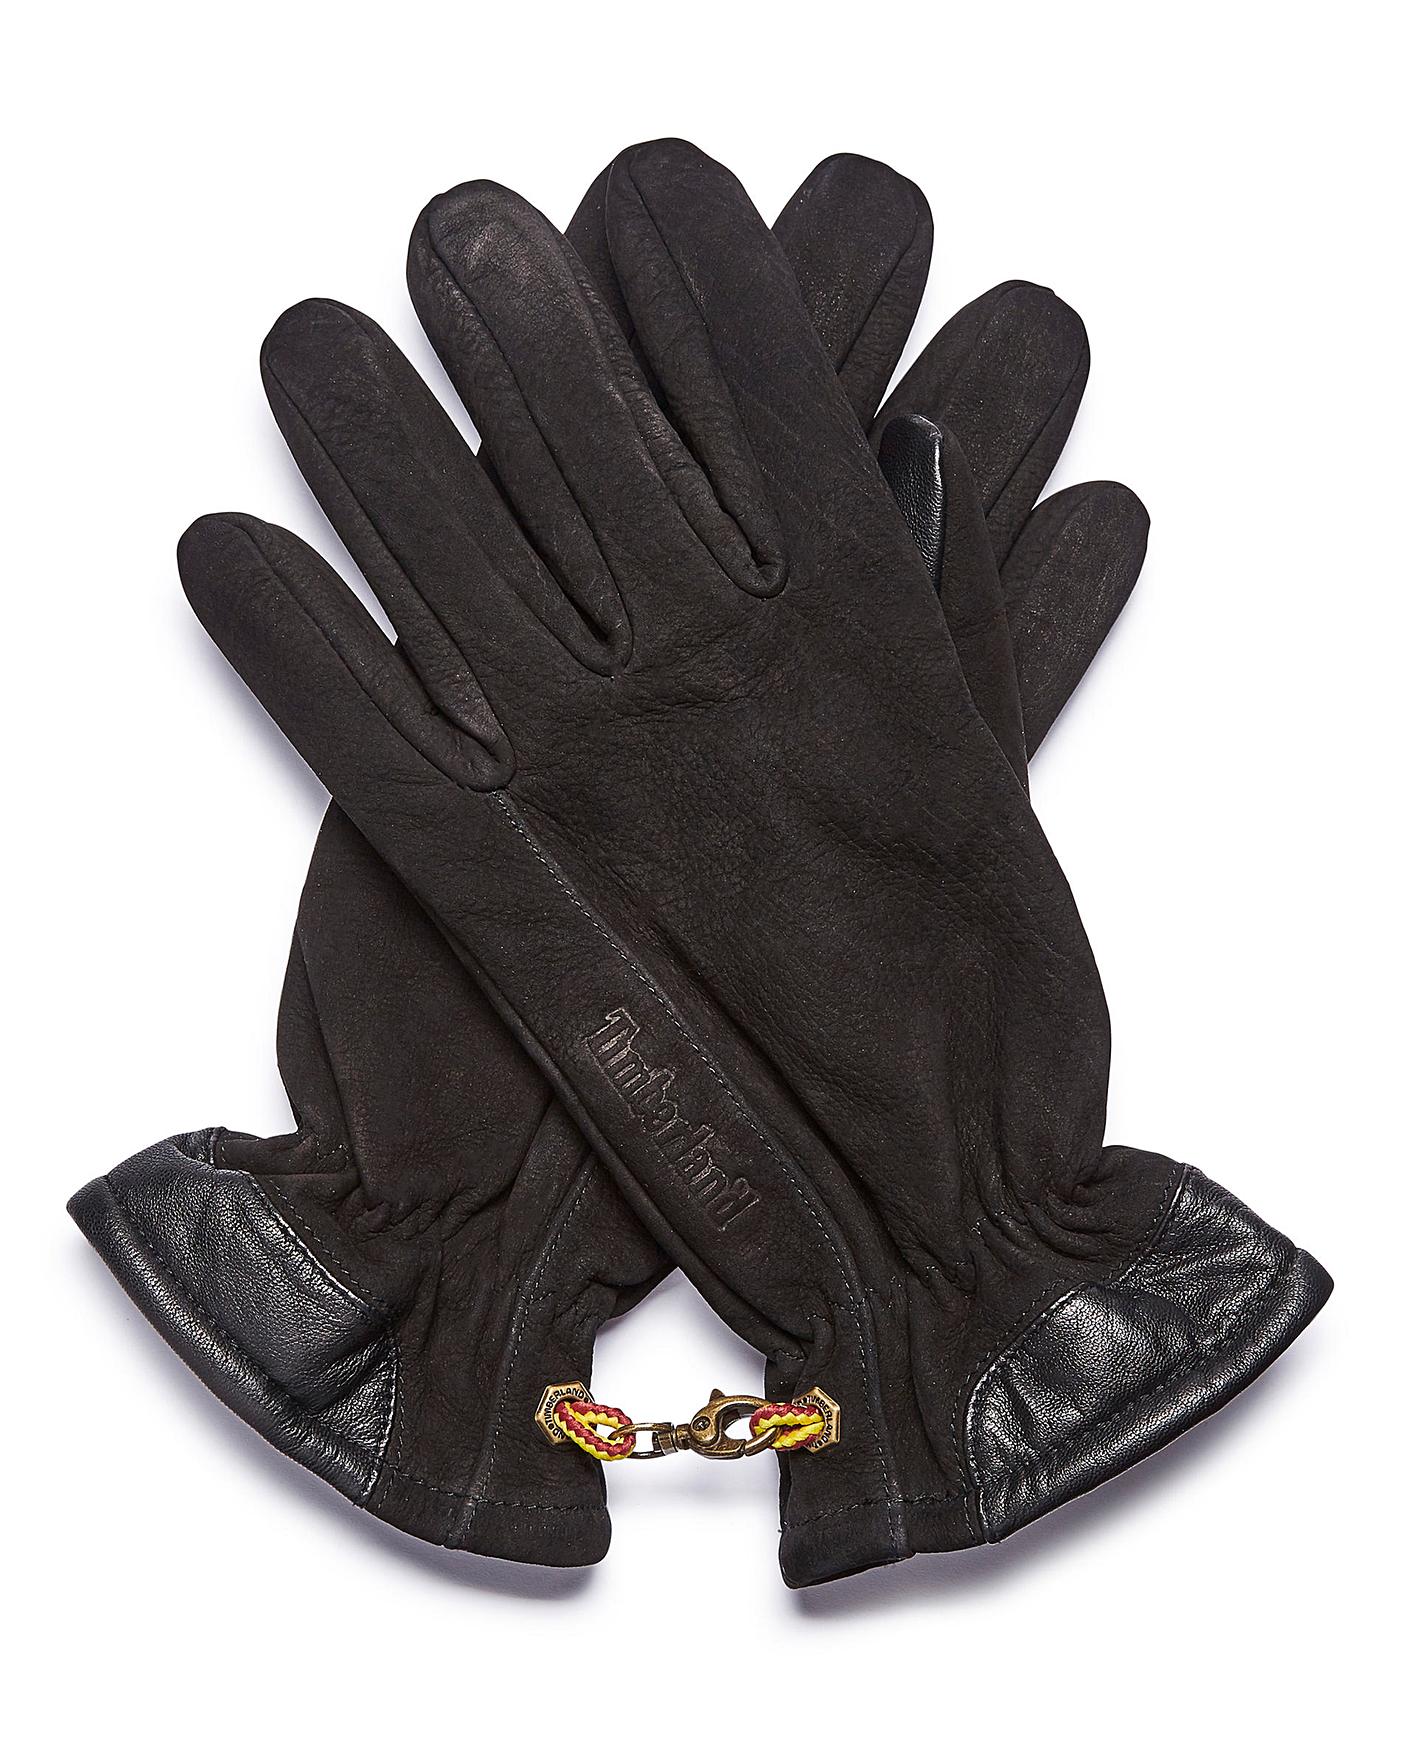 timberland touchscreen gloves